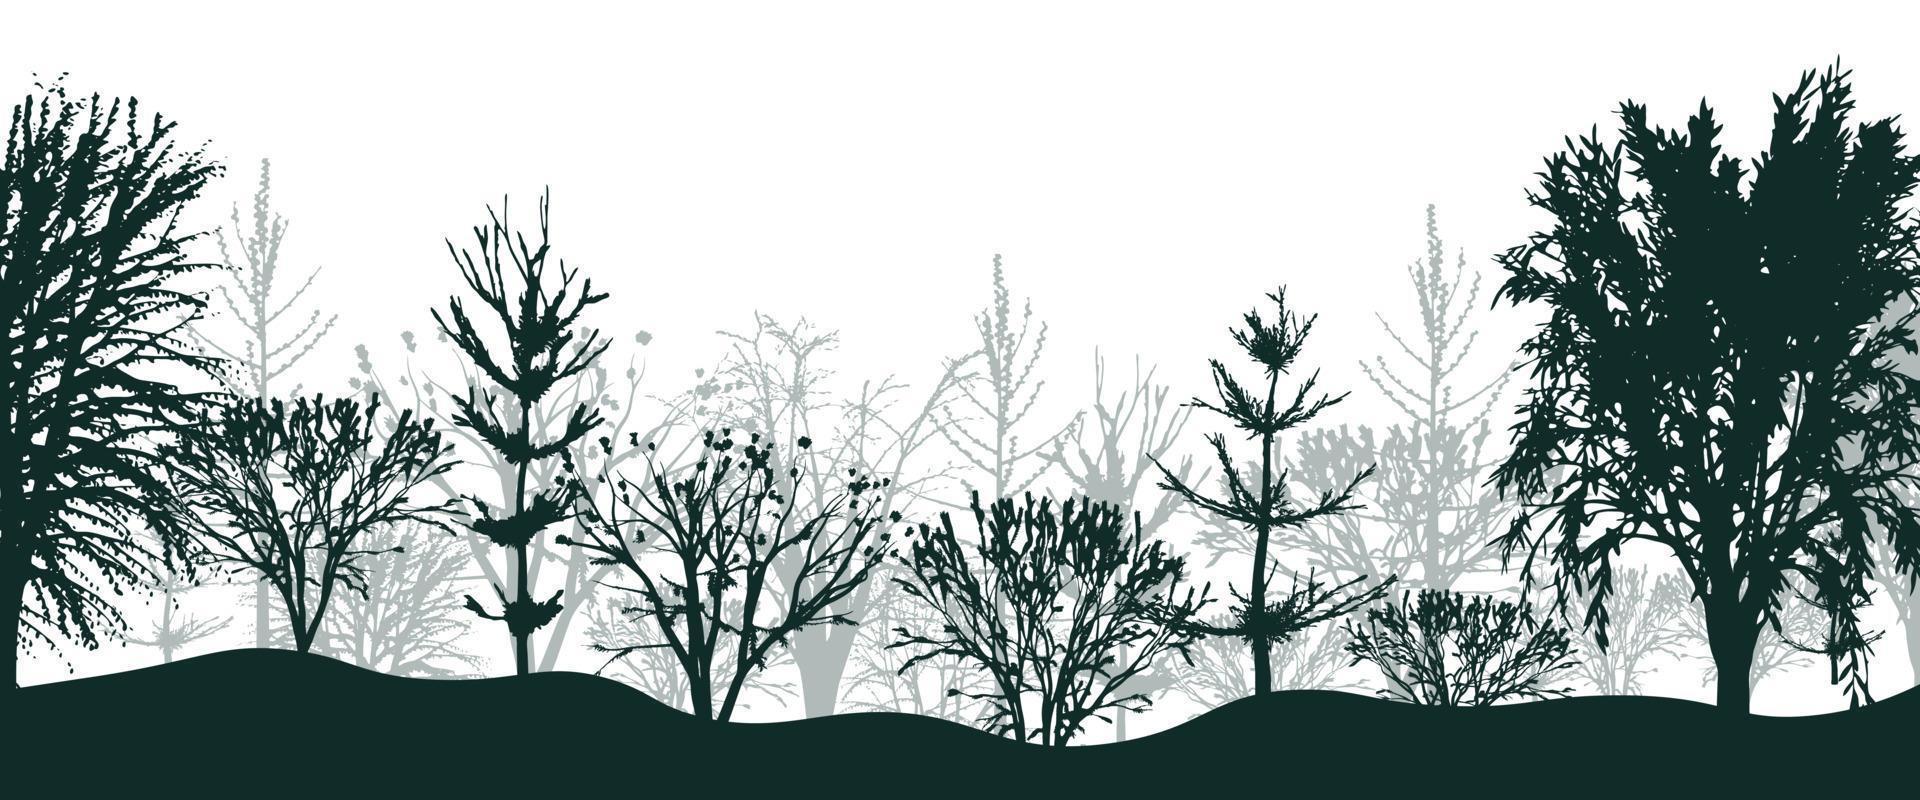 silhuetas negras de árvores no fundo da floresta. matagal místico de abetos e faias com arbustos em nevoeiro leve. paisagem misteriosa em design vetorial natural vetor